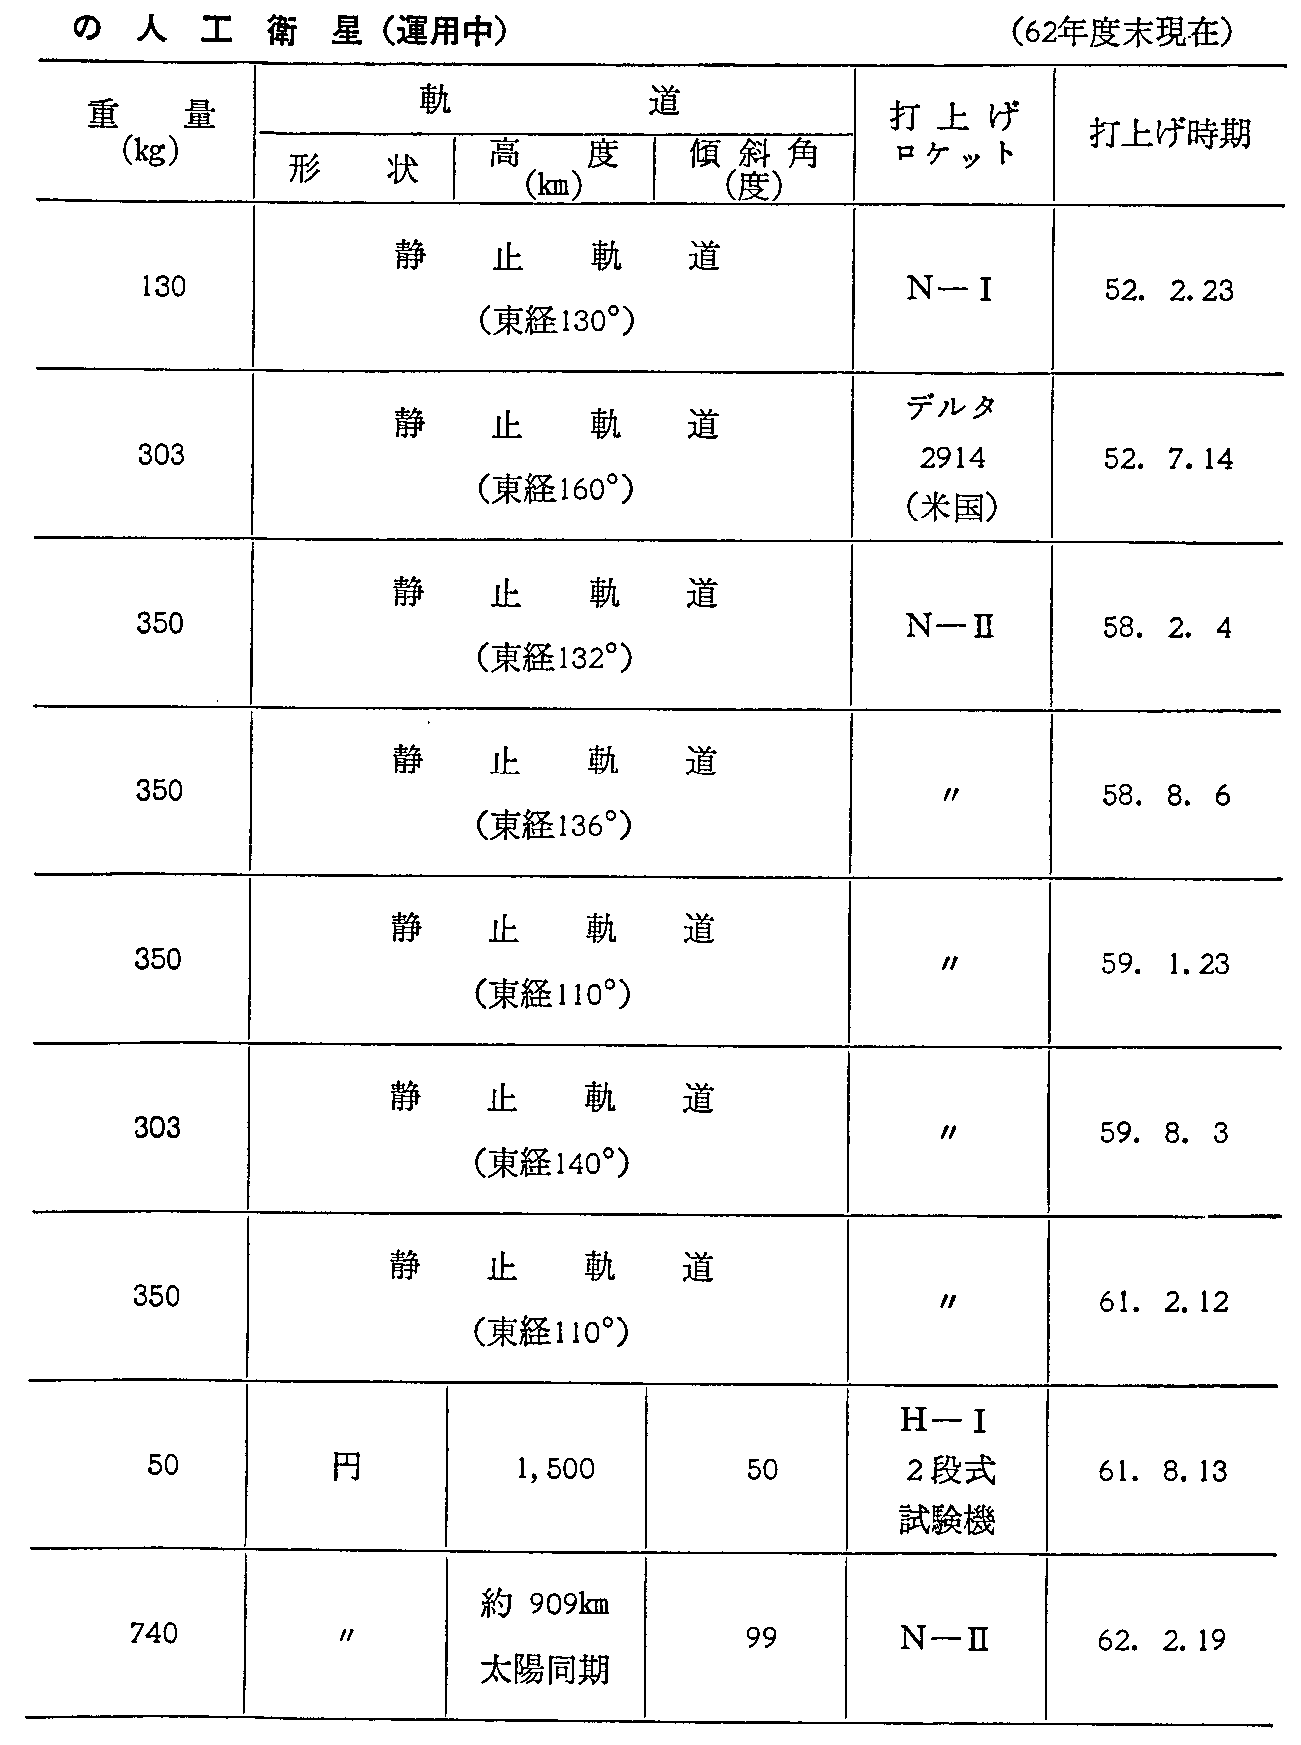 <3>-6-4\ p̐lHq(^p)(62Nx)(2)